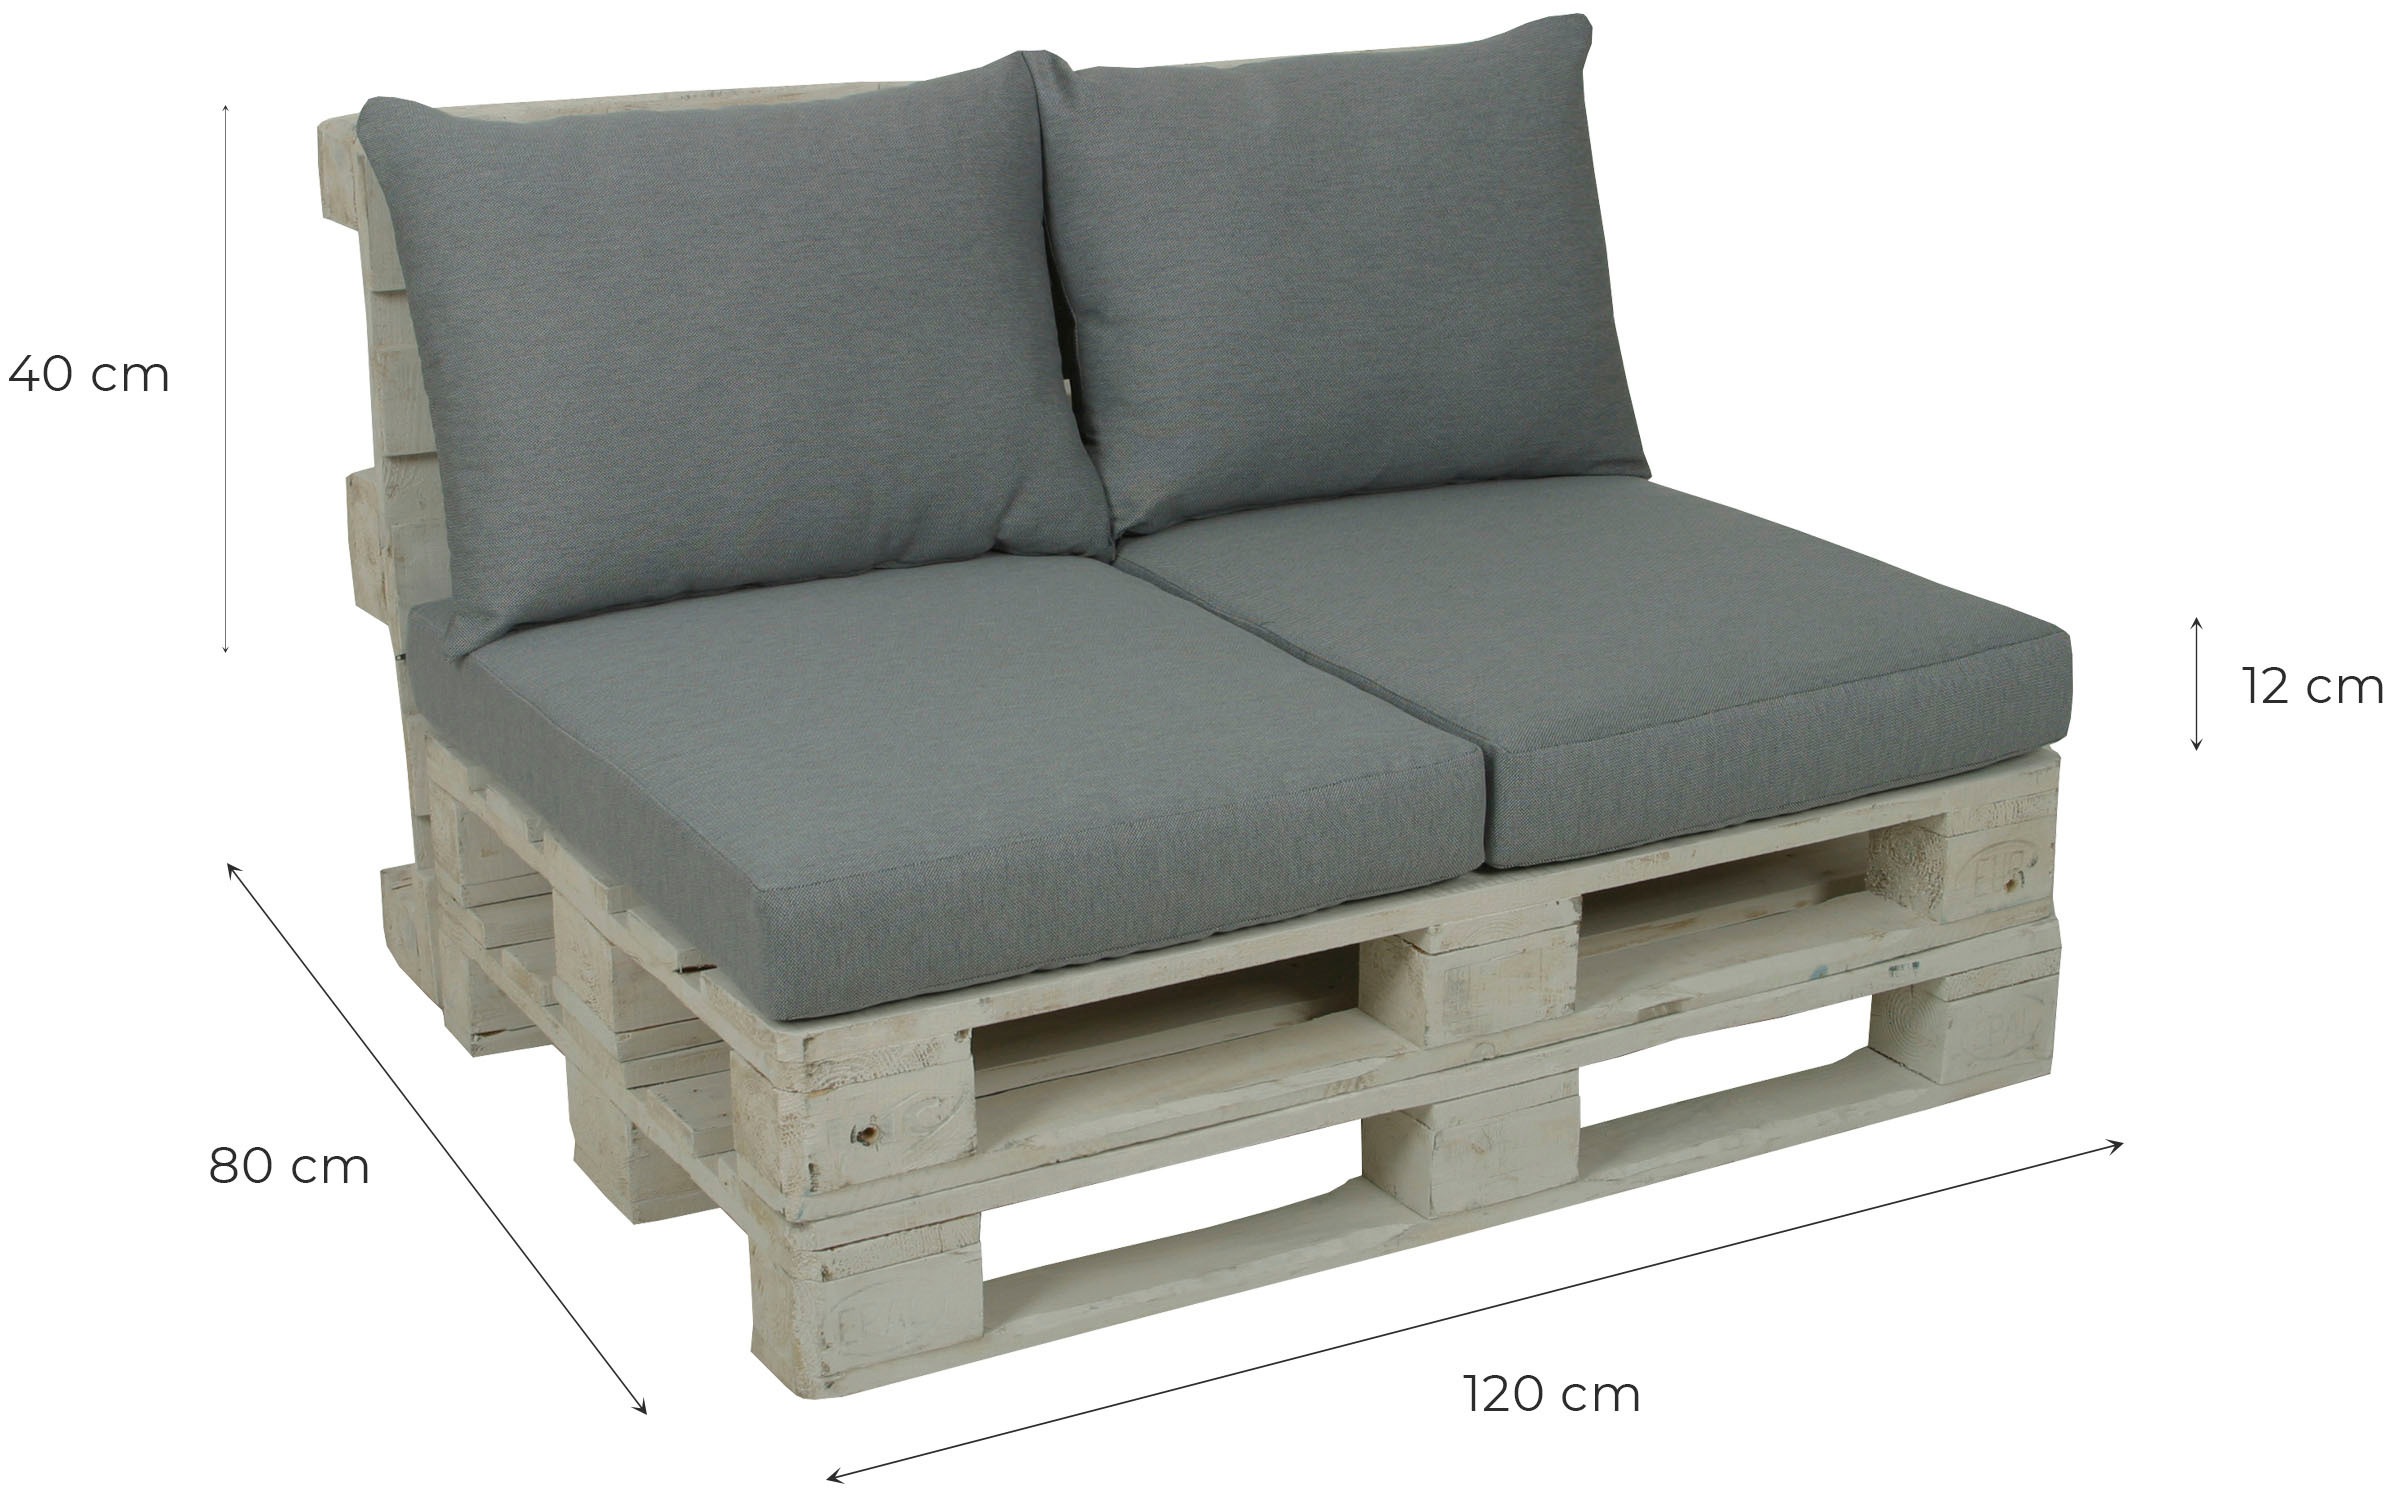 GO-DE Palettenkissen, 60x80 cm, 12 cm gepolstert, 2 Sitz- und 2 Rückenkissen für 1 Palette